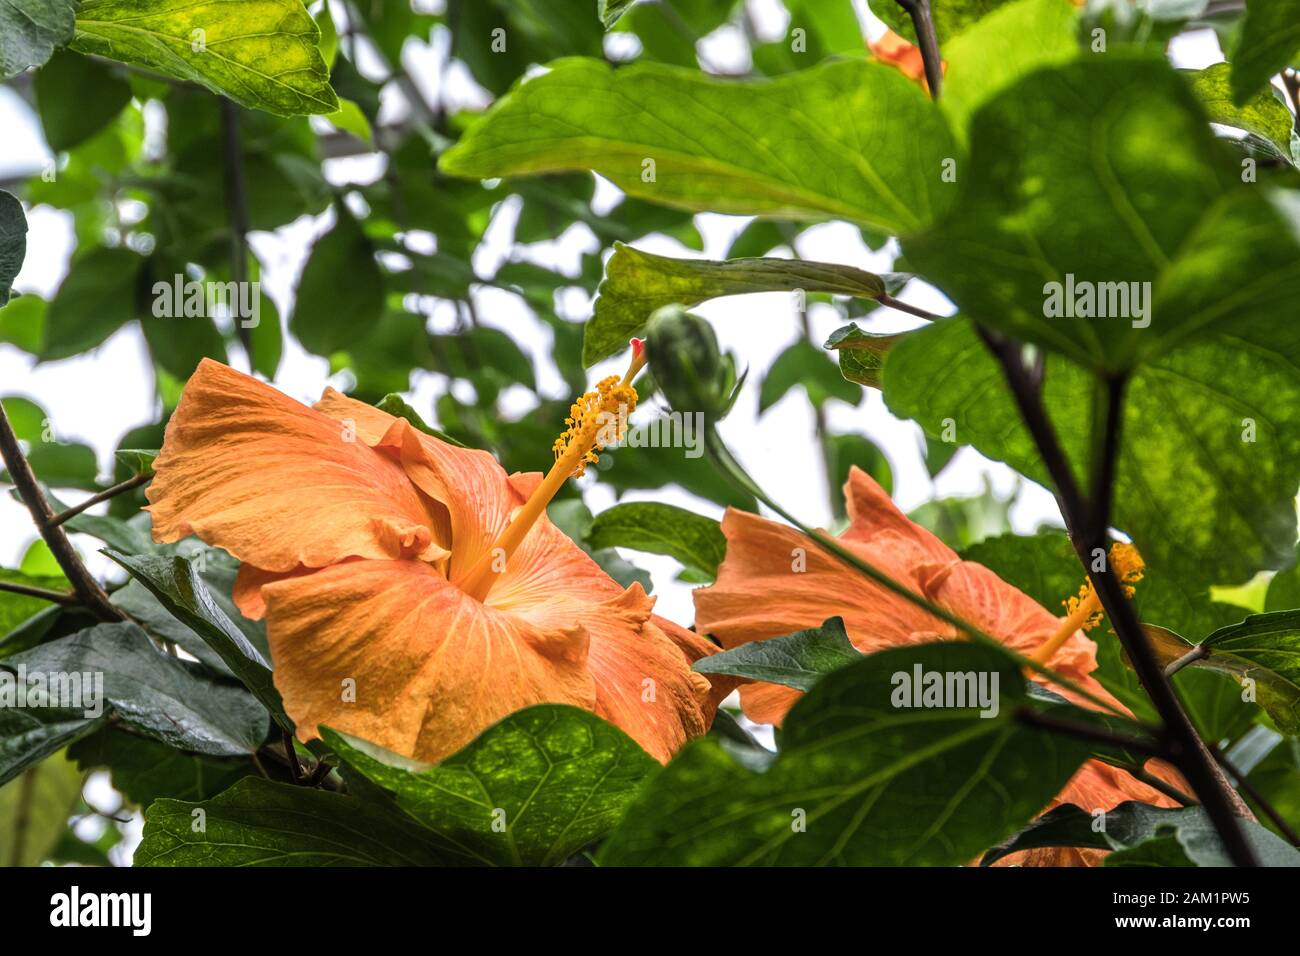 Orange chinese roses Stock Photo